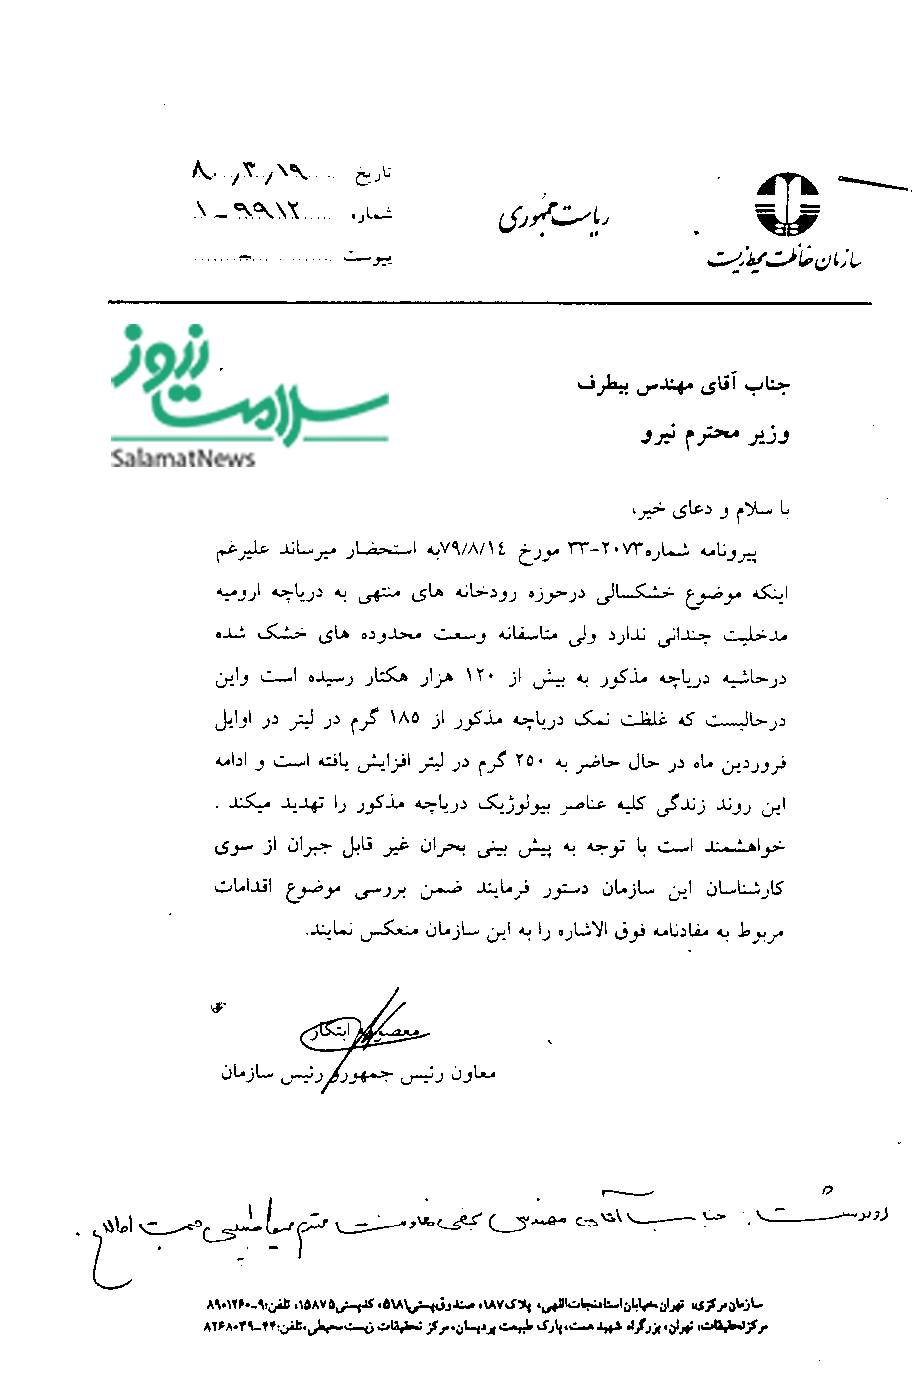 نامه ابتکار به وزیر نیرو براری جلوگیری از خشک شدن دریاچه ارومیه